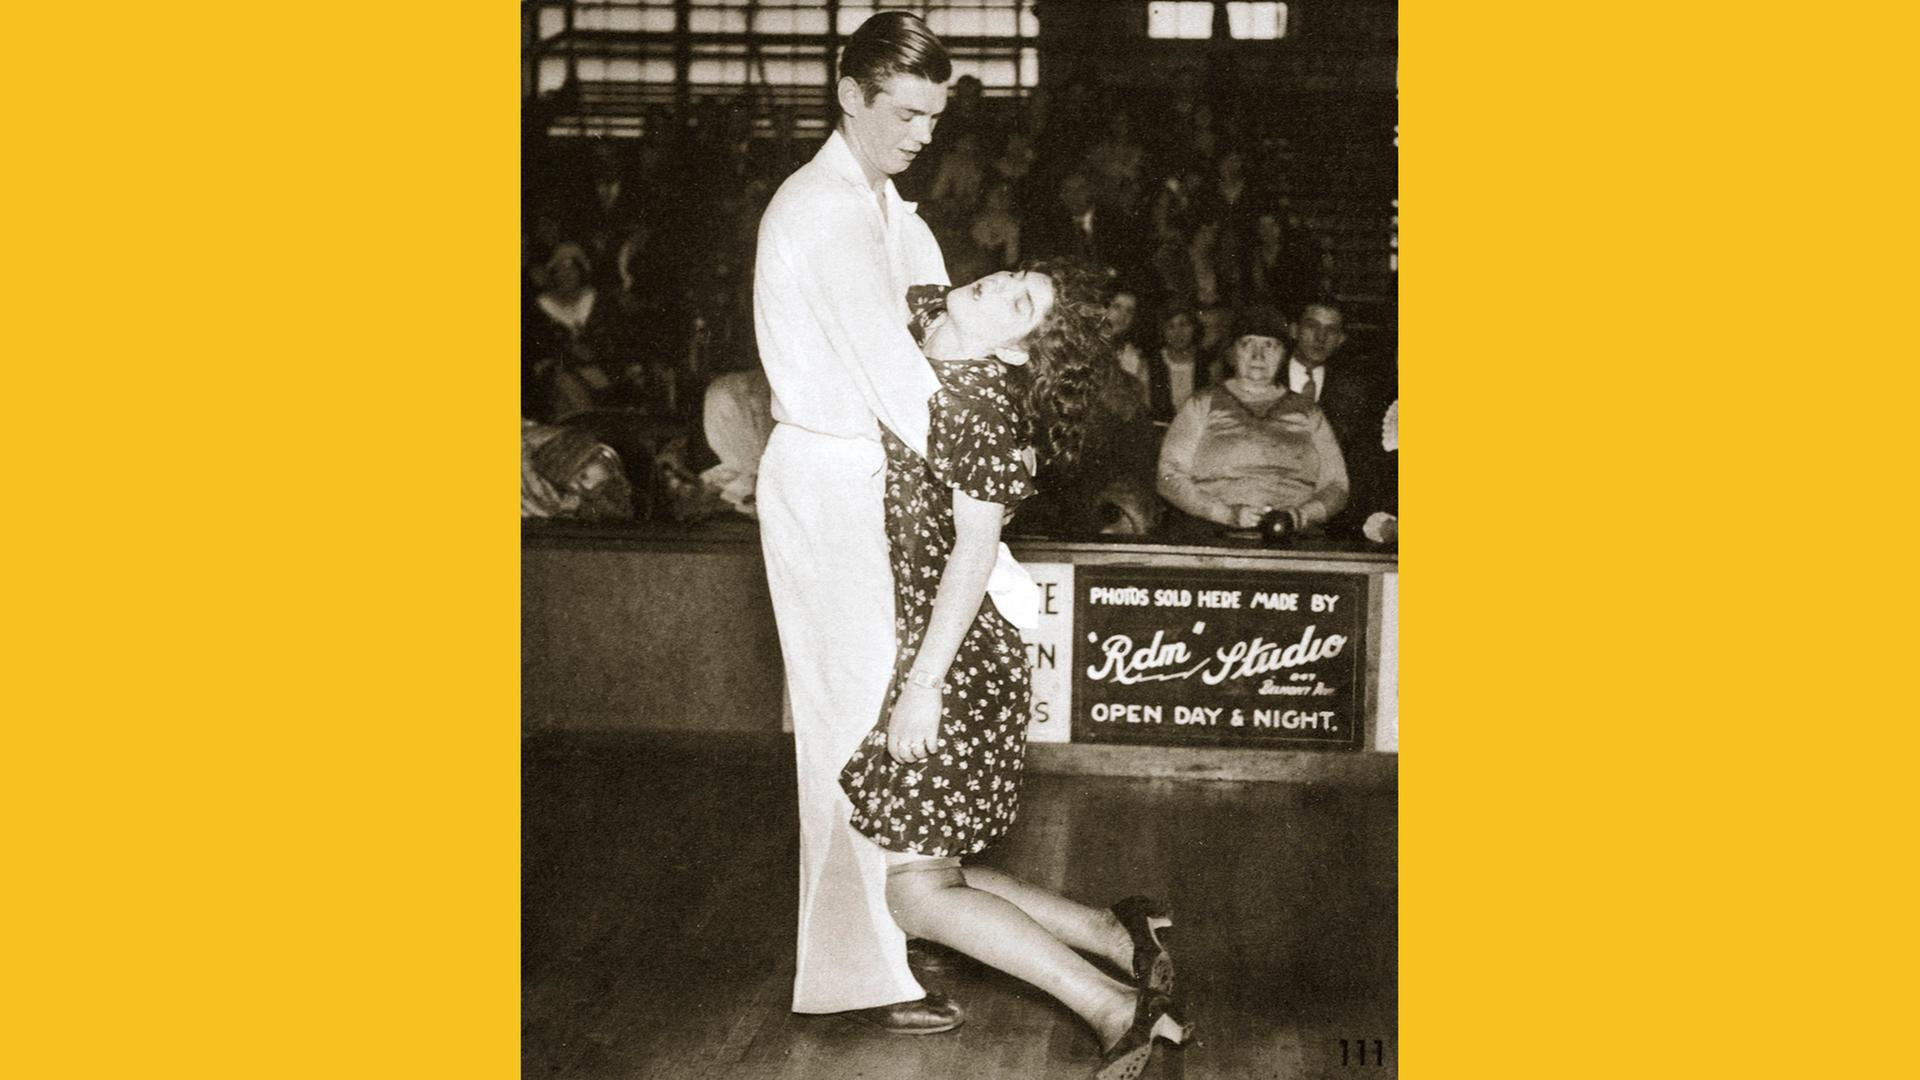 Teilnehmer an einem Tanzmarathon in den USA, 1930. Zu sehen: Auf einer Tanzfläche ein Paar. Der Mann hält eine Frau, die eingeschlafen ist 